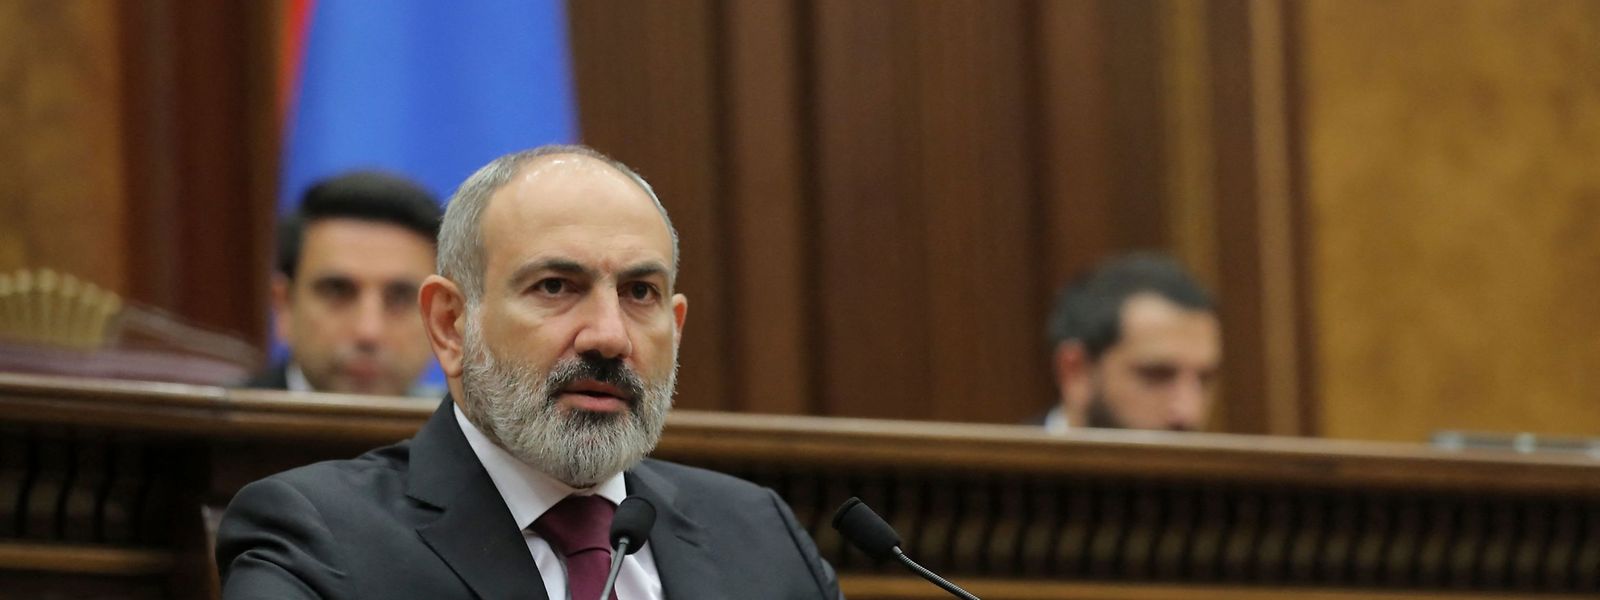 Der armenische Premierminister Nikol Paschinjan berichtet im Parlament in Jerewan über die militärische Eskalation.